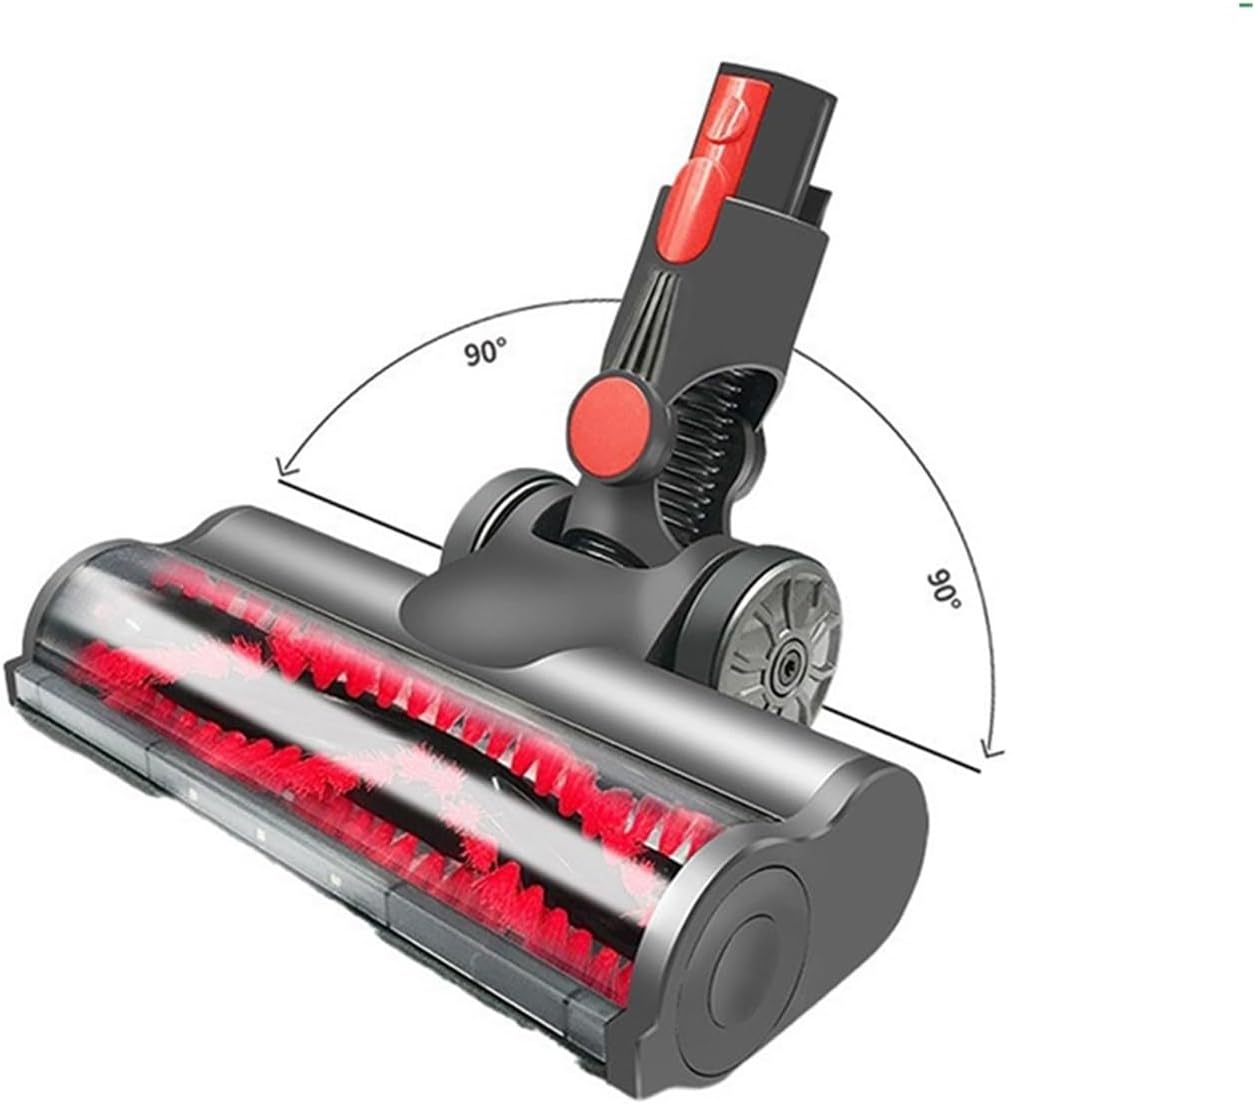 Motorized Turbine Brush Head with LED Headlight for Dyson V7 V8 V10 V11 V15